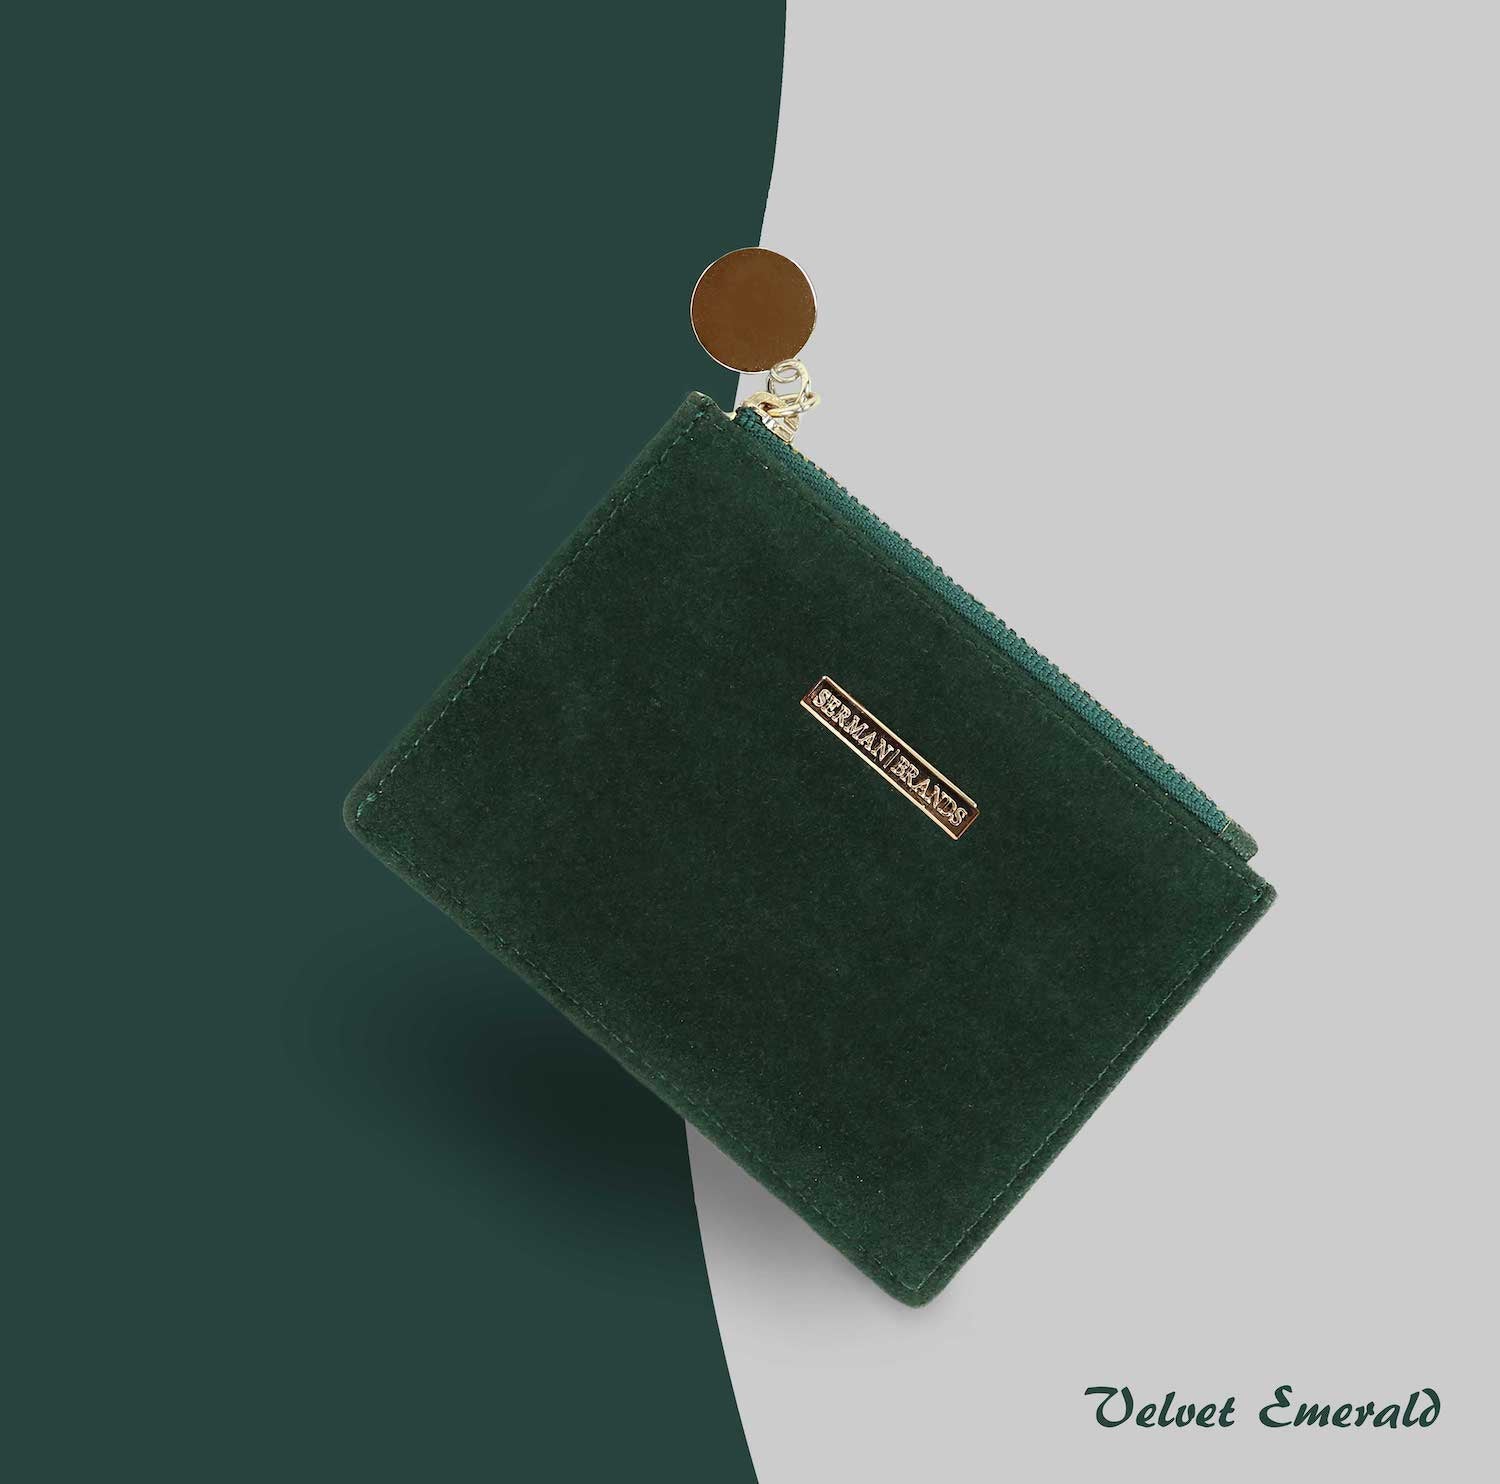 Velvet Emerald